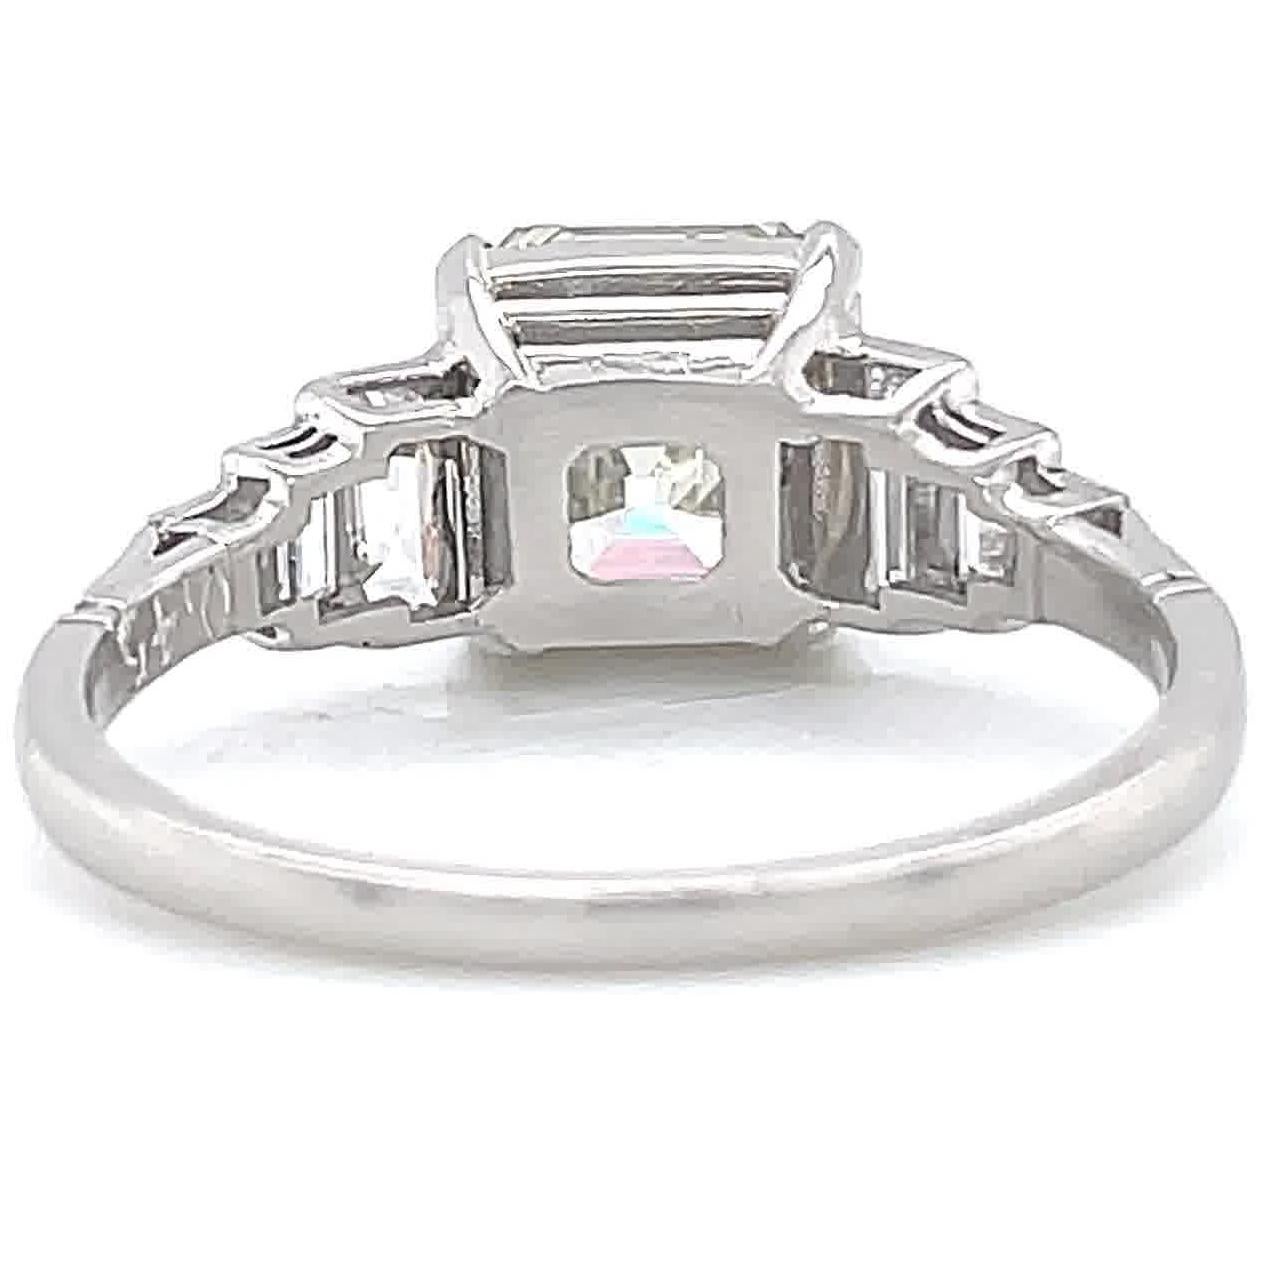 Women's Art Deco Inspired GIA 2.86 Carat Square Emerald Diamond Platinum Engagement Ring